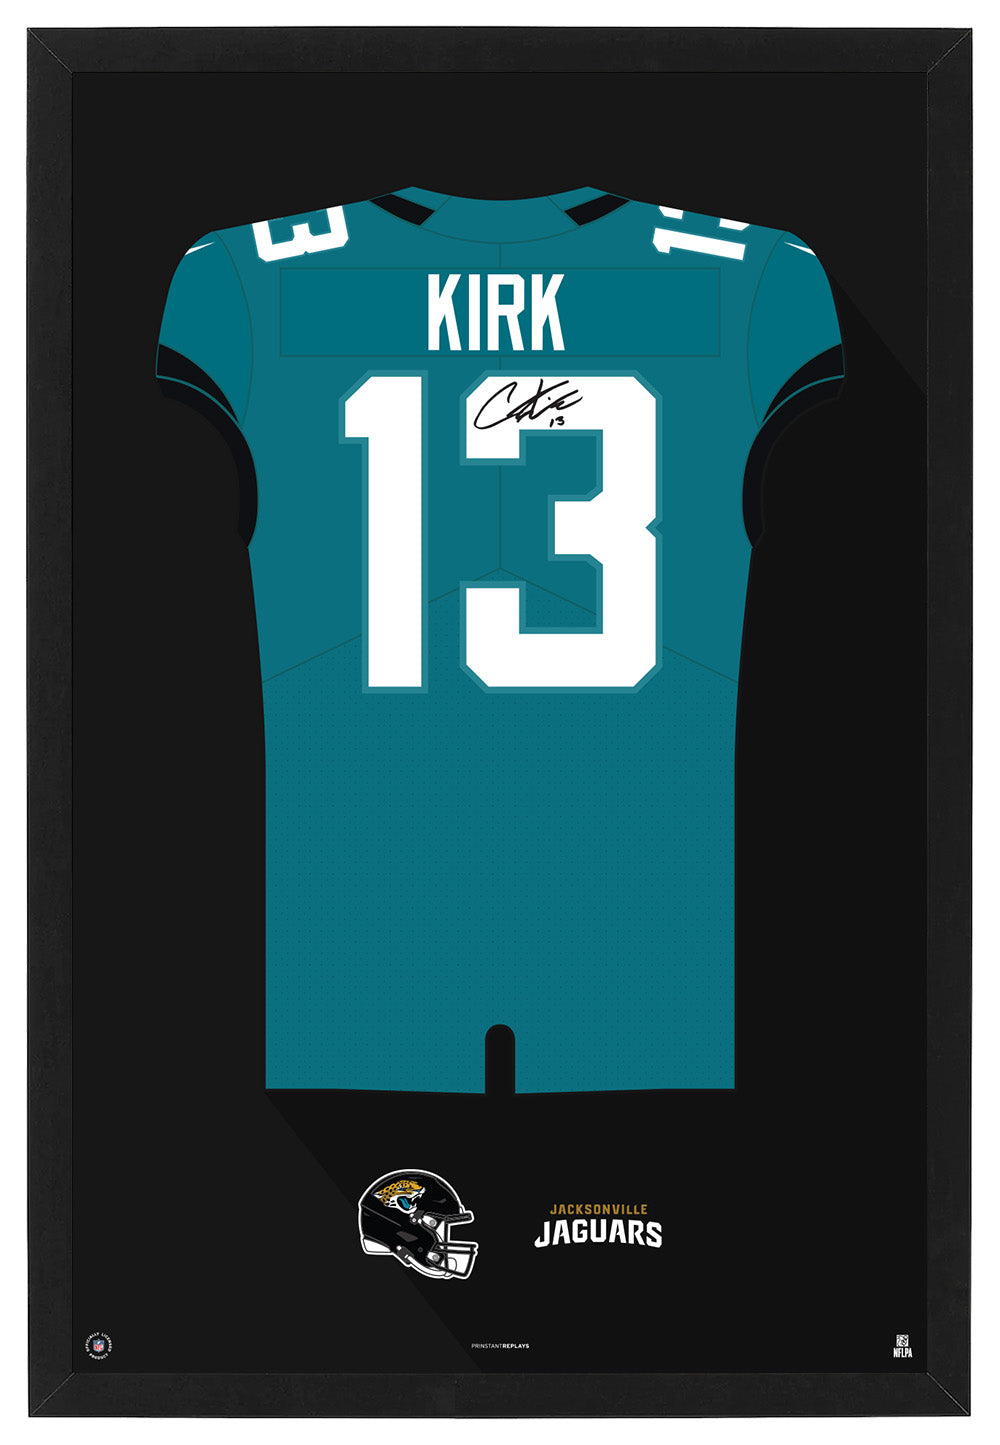 Jacksonville Jaguars Christian Kirk Autographed Jersey Framed Print